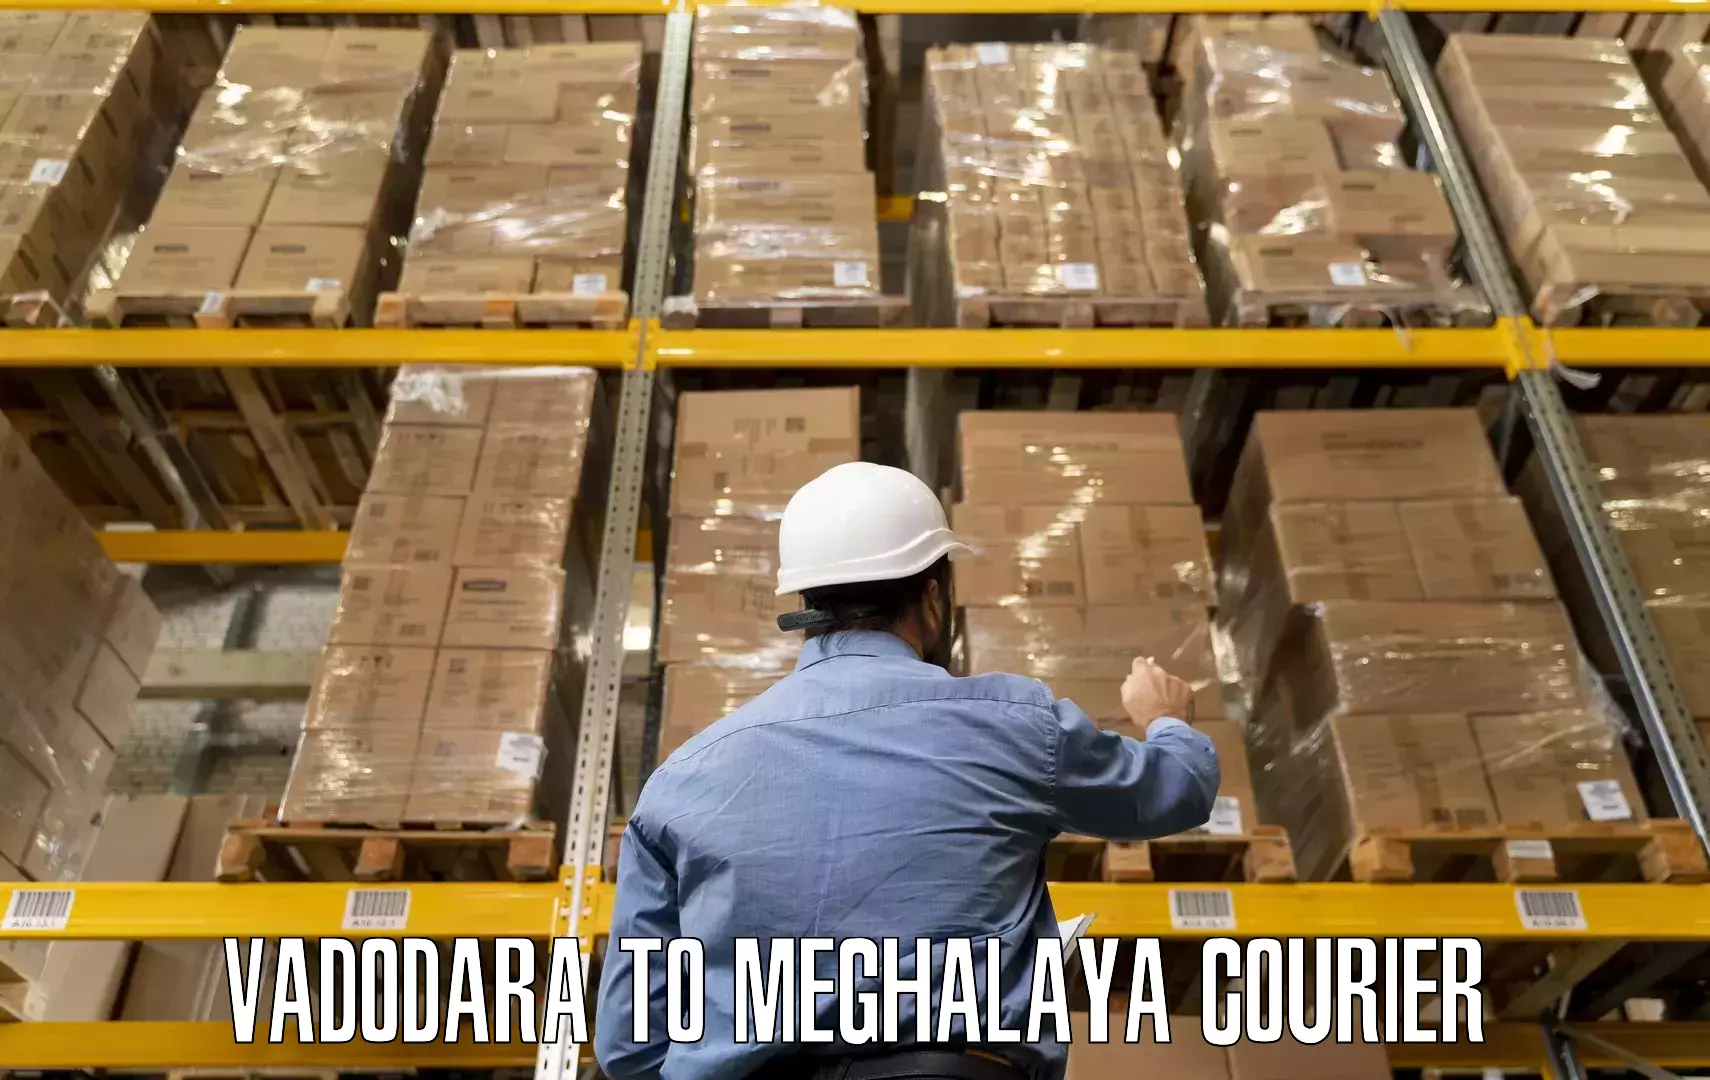 Efficient moving company Vadodara to Meghalaya